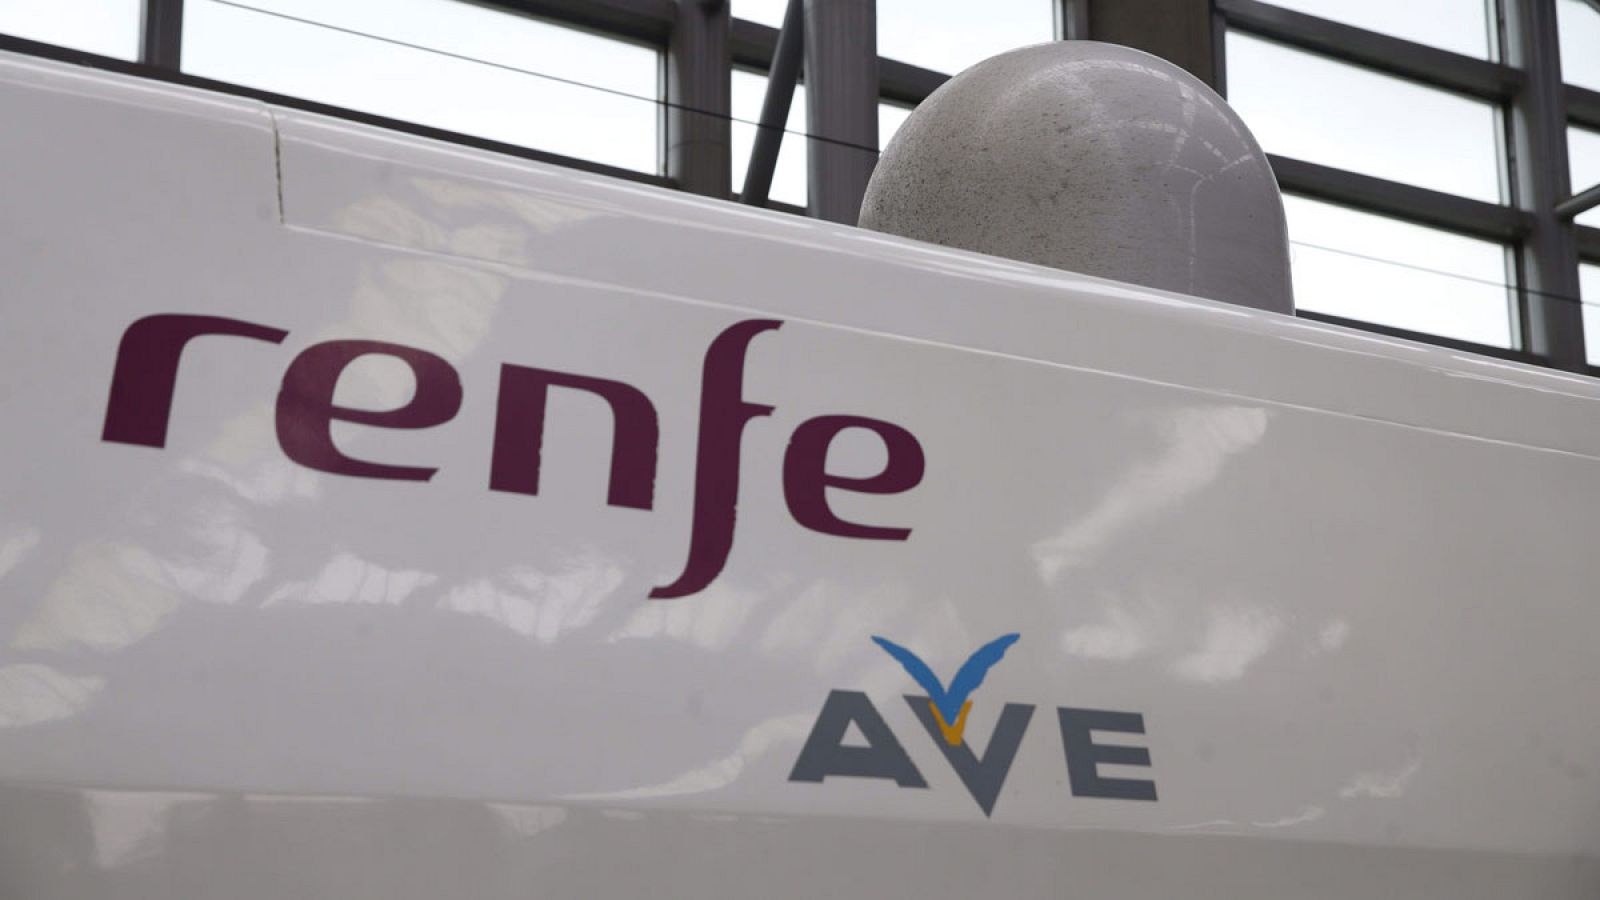 El logo del AVE junto al de Renfe en uno de los vagones del tren de alta velocidad